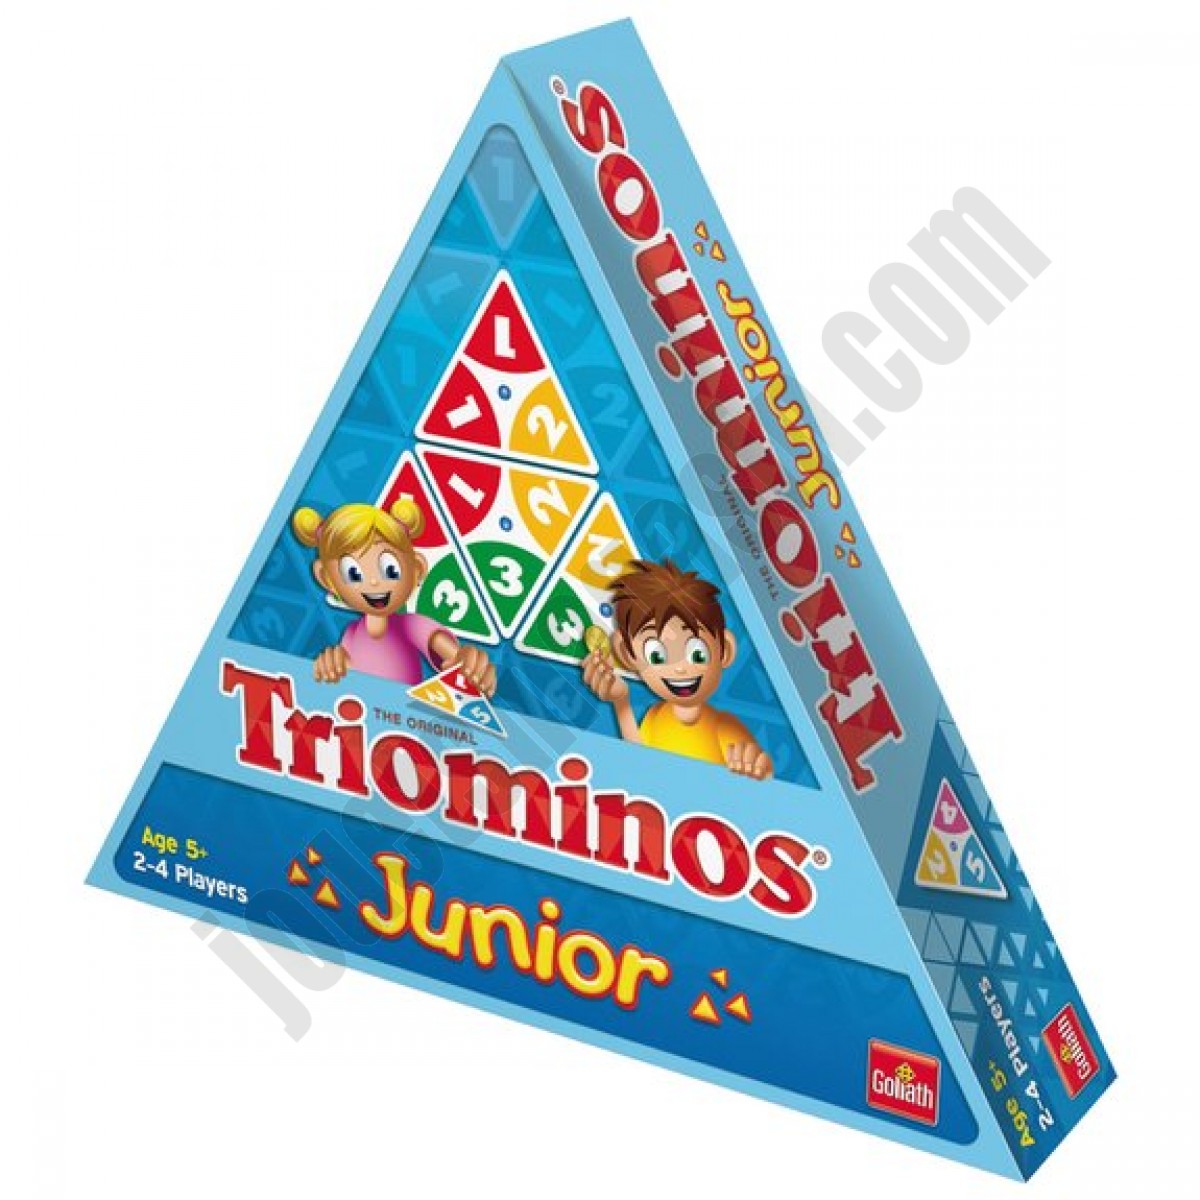 Triominos Junior ◆◆◆ Nouveau - Triominos Junior ◆◆◆ Nouveau